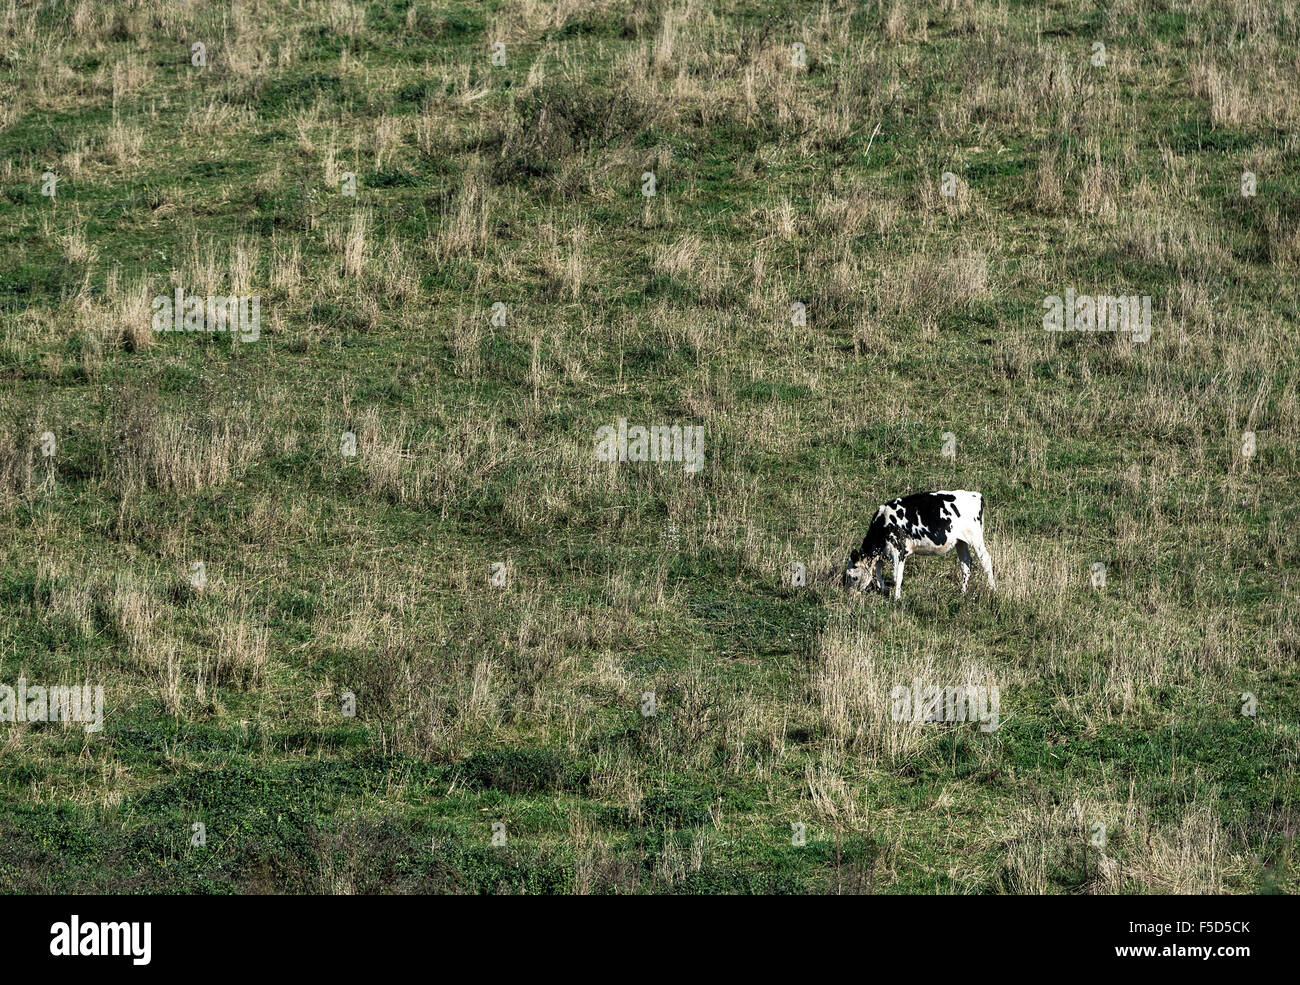 Vache broute des pâturages à flanc de colline, Madison, New York, USA Banque D'Images